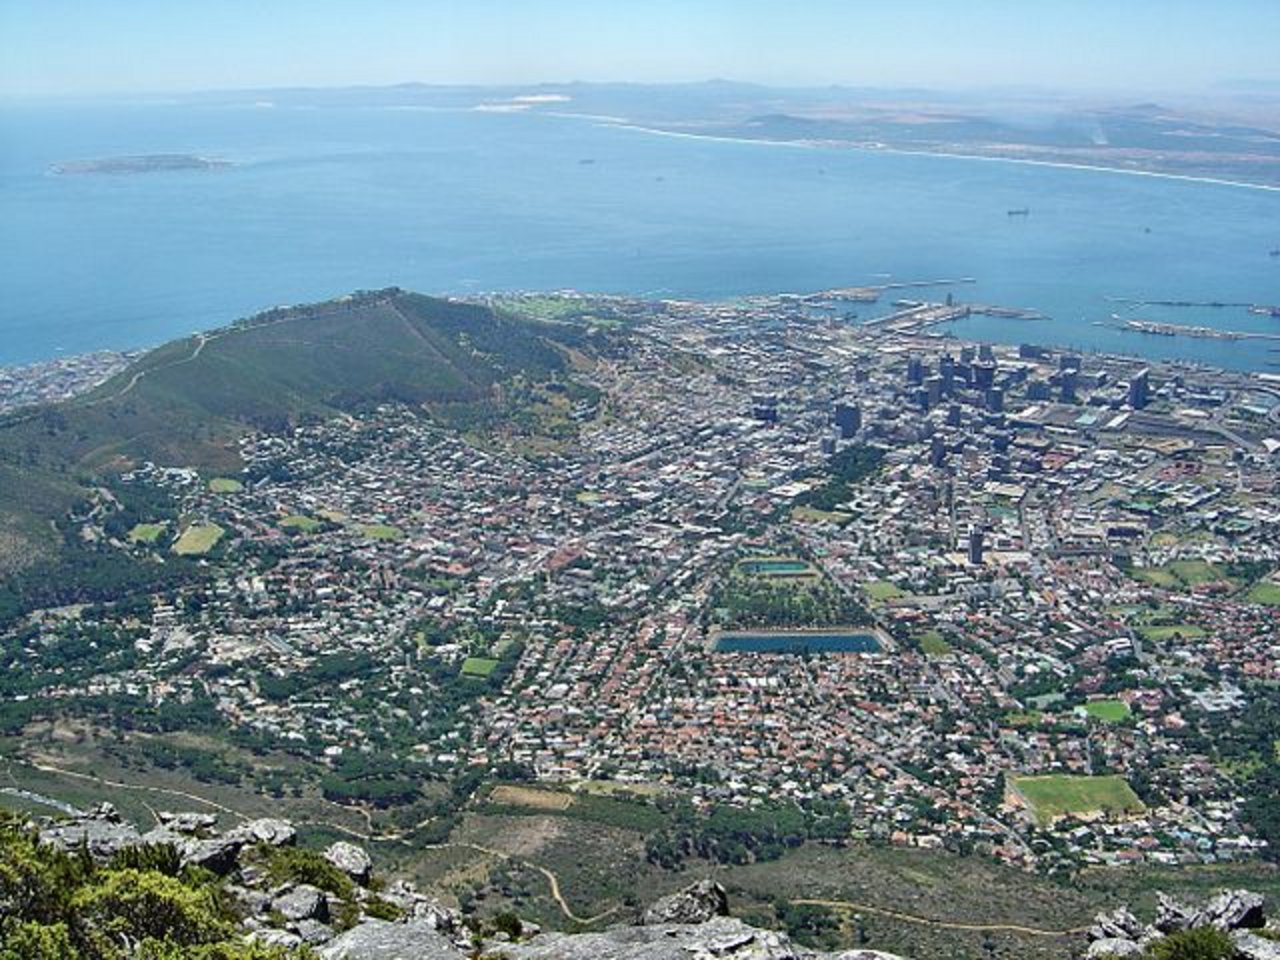 Blick auf Kapstadt mit dem Waterfront Harbour und Robben Island vom Tafelberg aus. (Bild Andreas Tusche - Wikimedia)